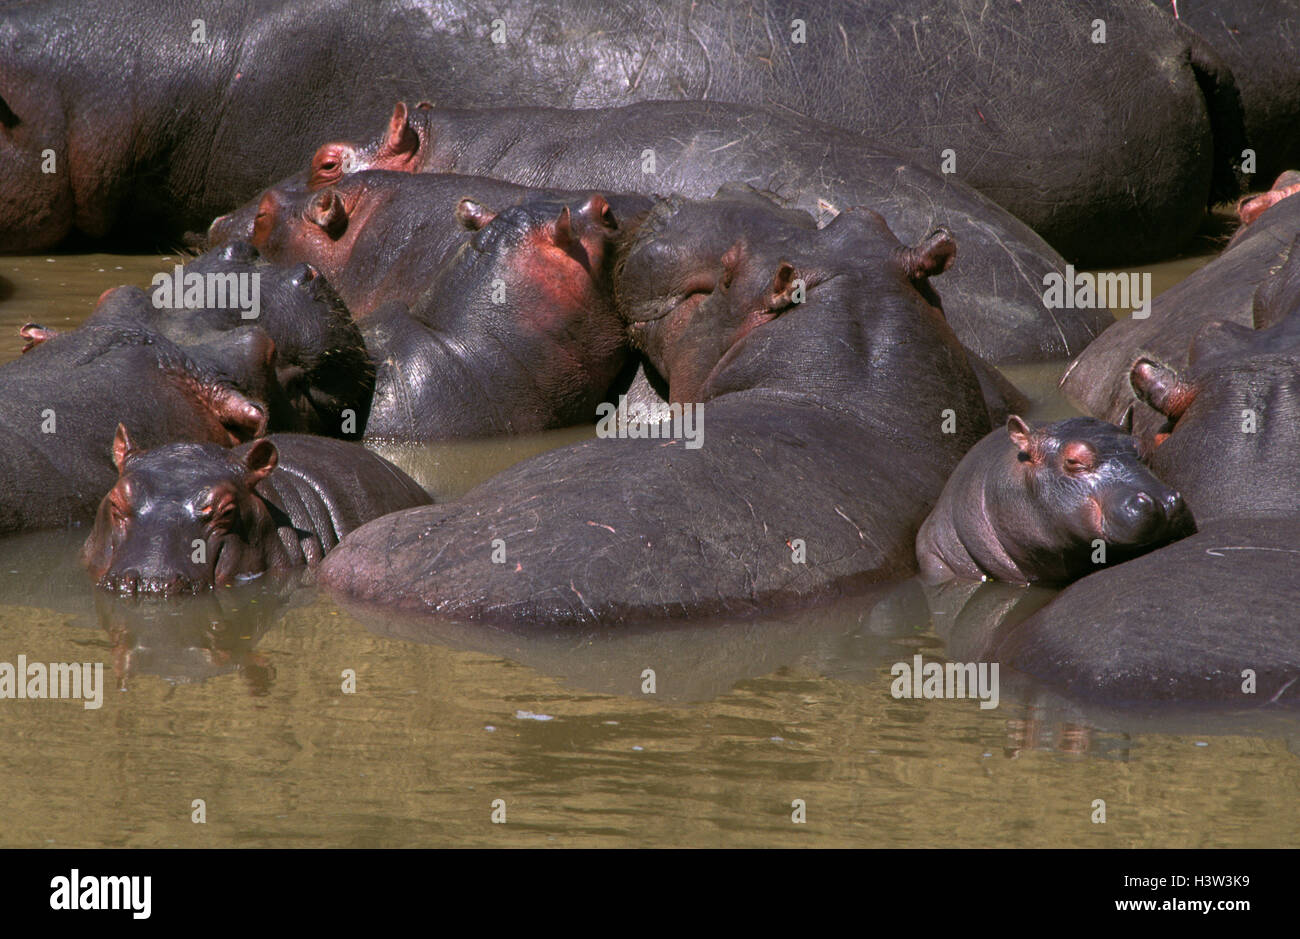 Hippopotamus (Hippopotamus amphibius) Stock Photo